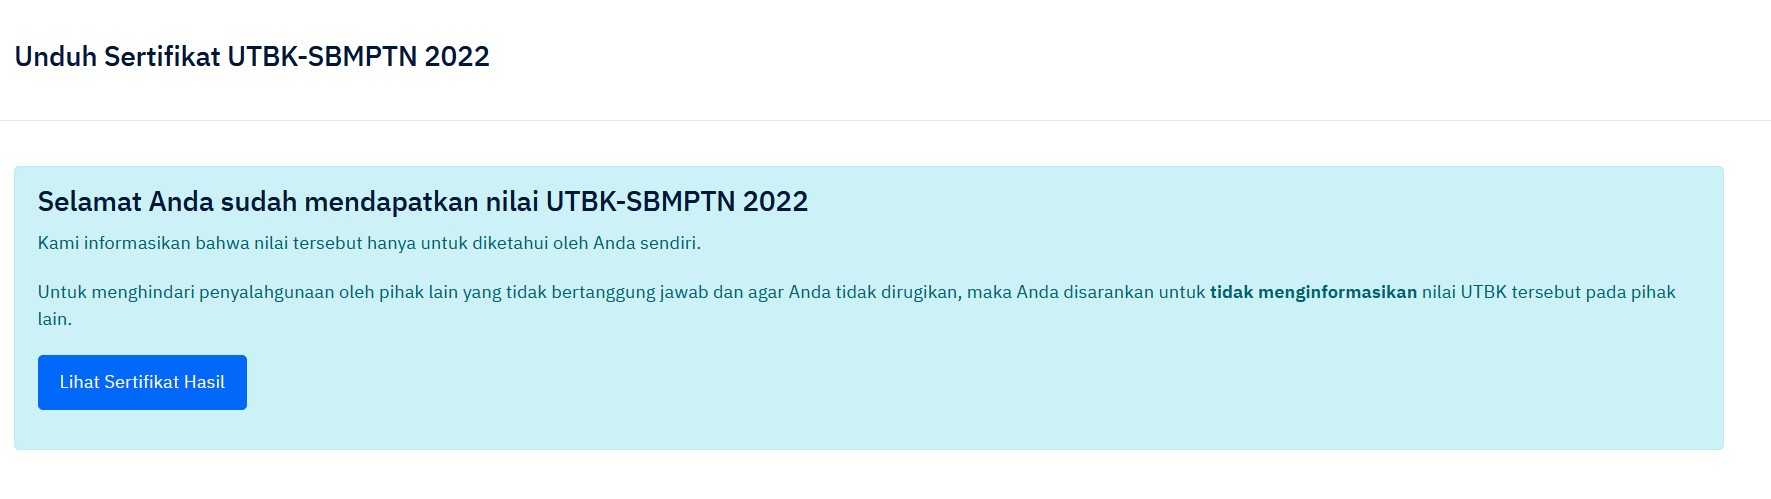 Ini Cara Unduh Sertifikat UTBK-SBMPTN 2022 di Utbk-sbmptn.ltmpt.ac.id